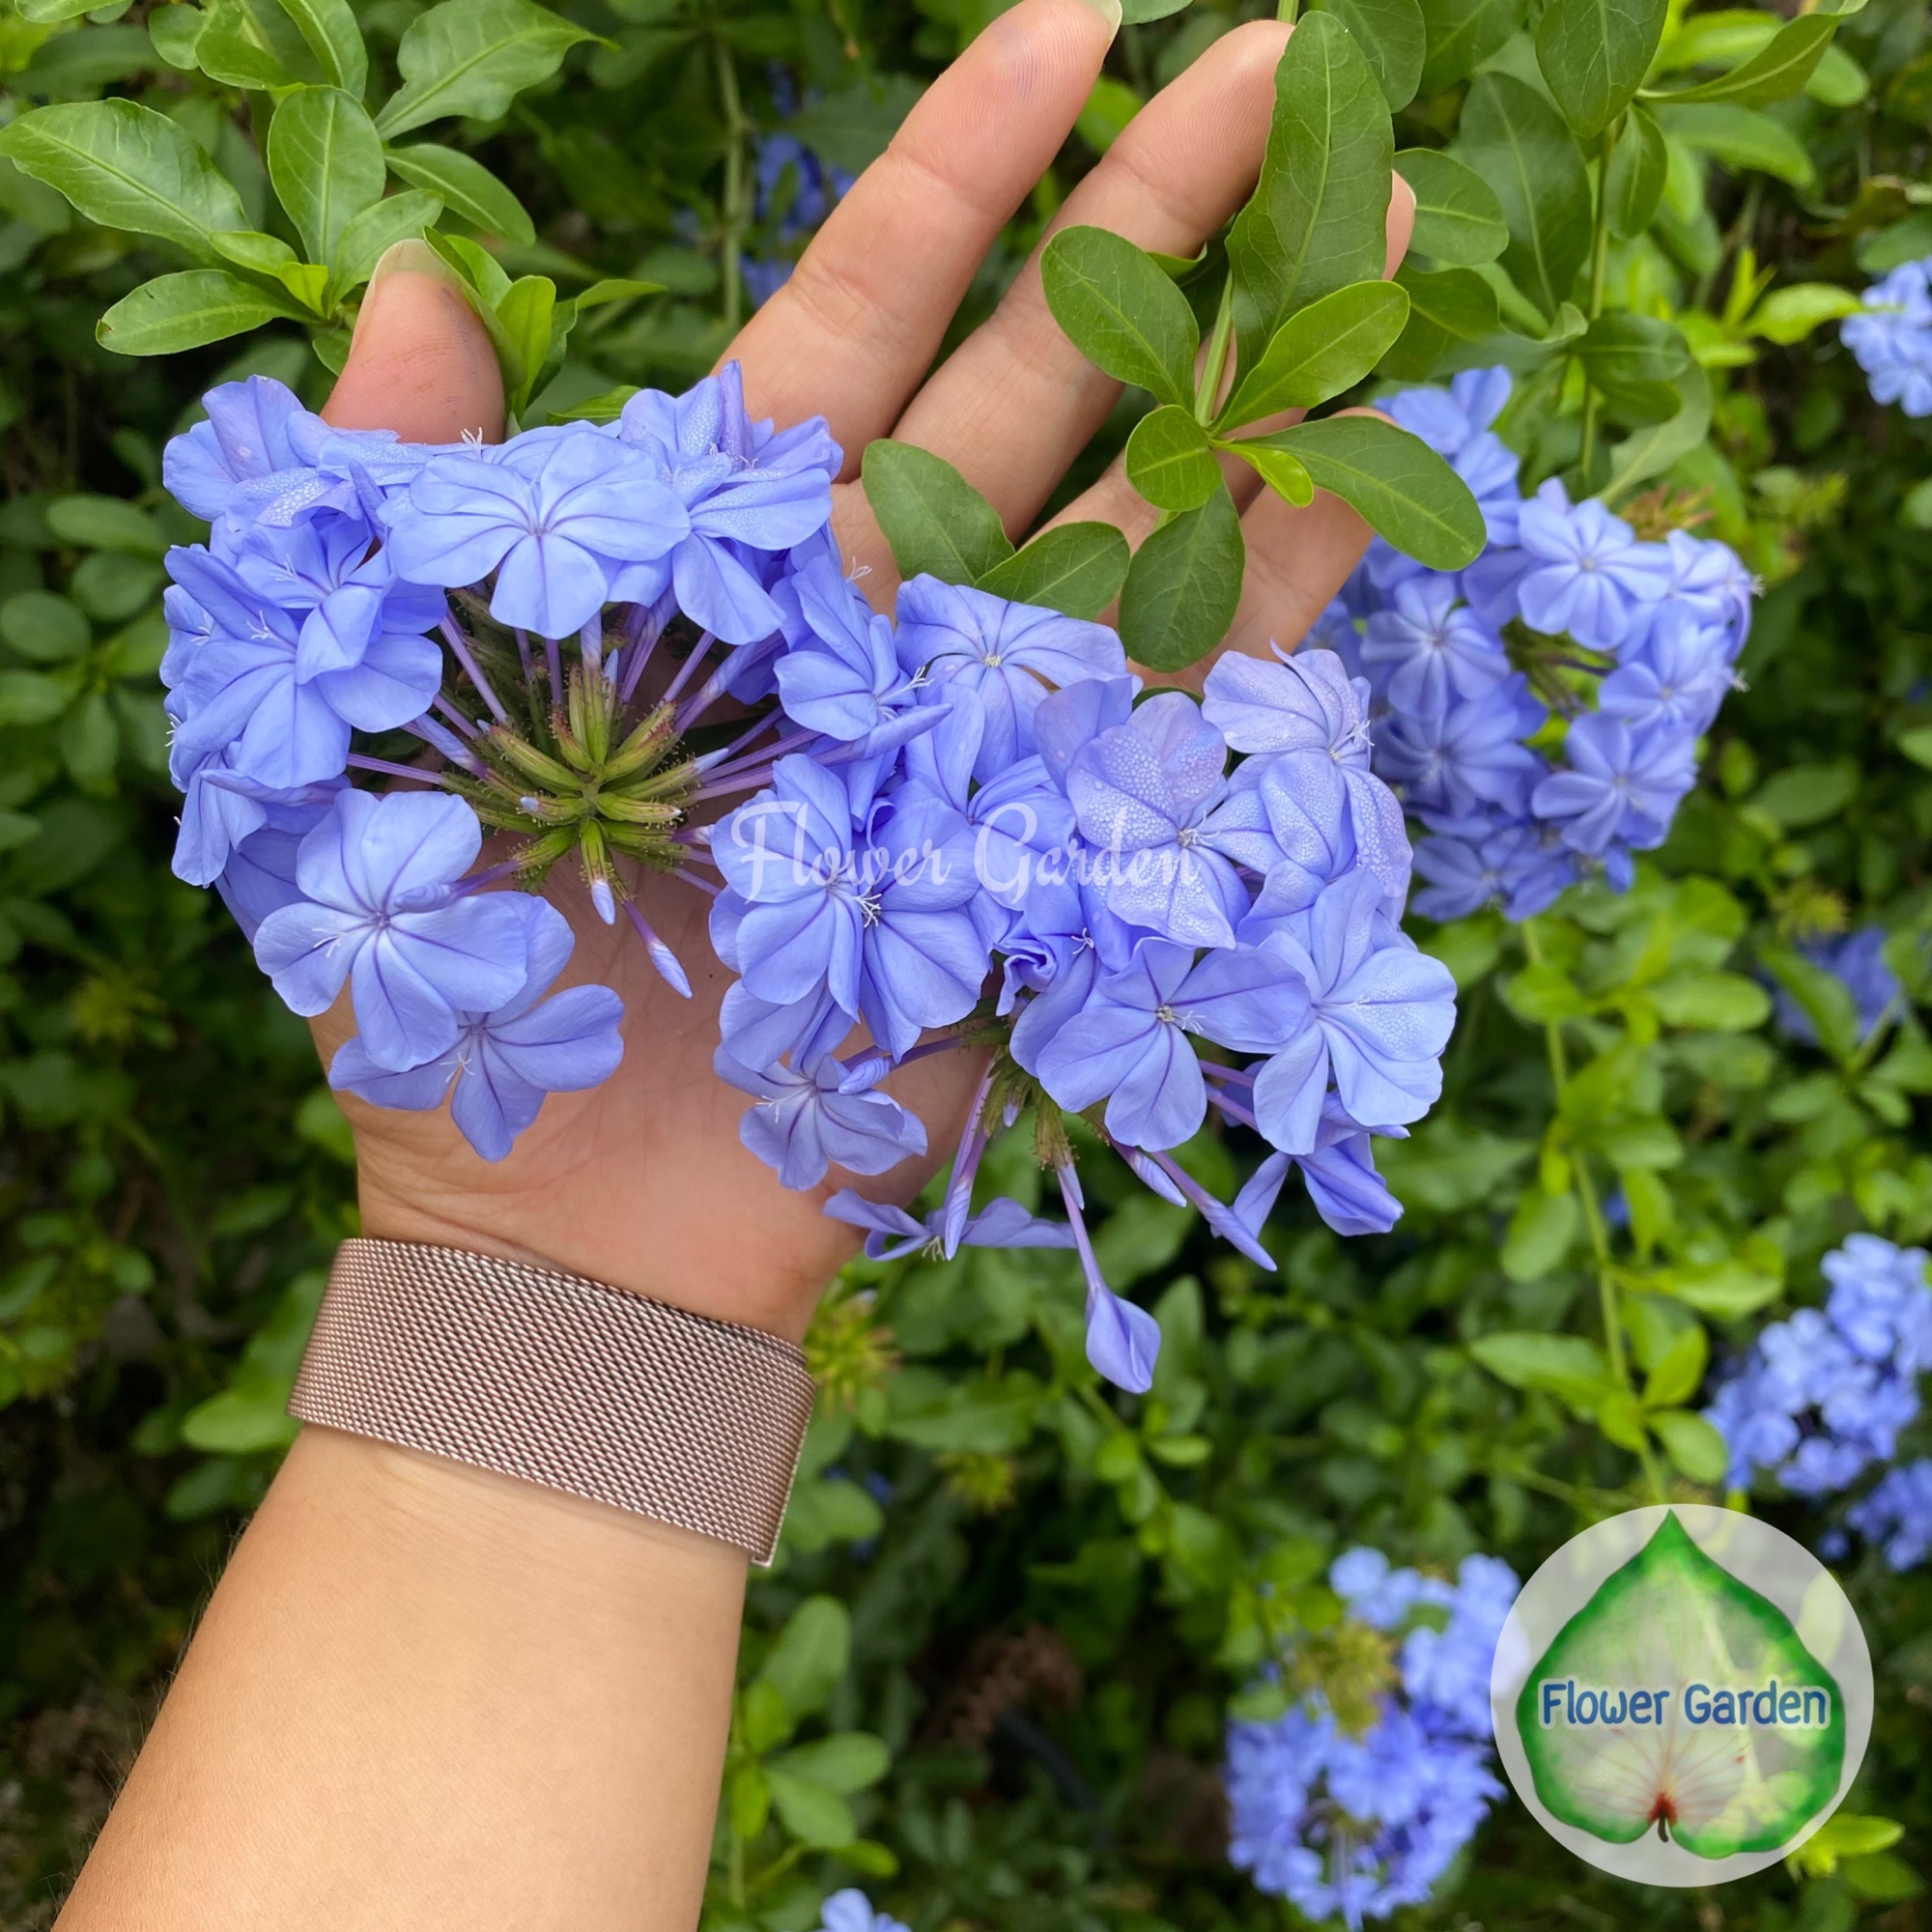 พยับหมอก ดอกพวงสีฟ้า ออกดอกทั้งปี ปลูกแดด เลี้ยงง่าย ไม้พุ่มปลูกทำรั้ว แบบถุง